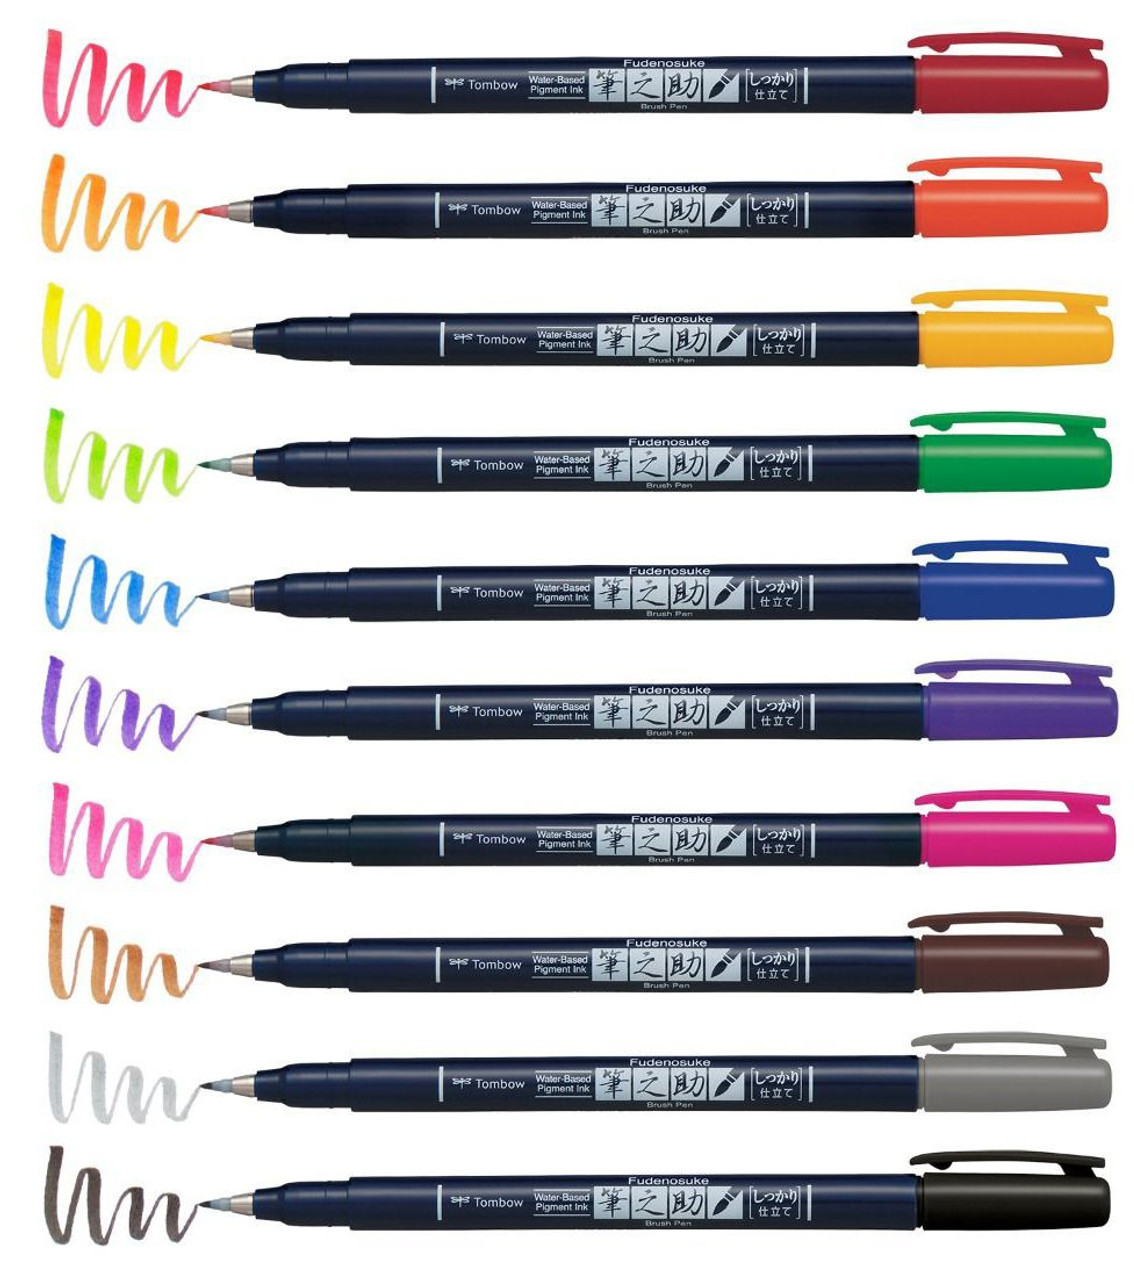 Tombow Fudenosuke Hard Tip Brush Pen Colors - John Neal Books